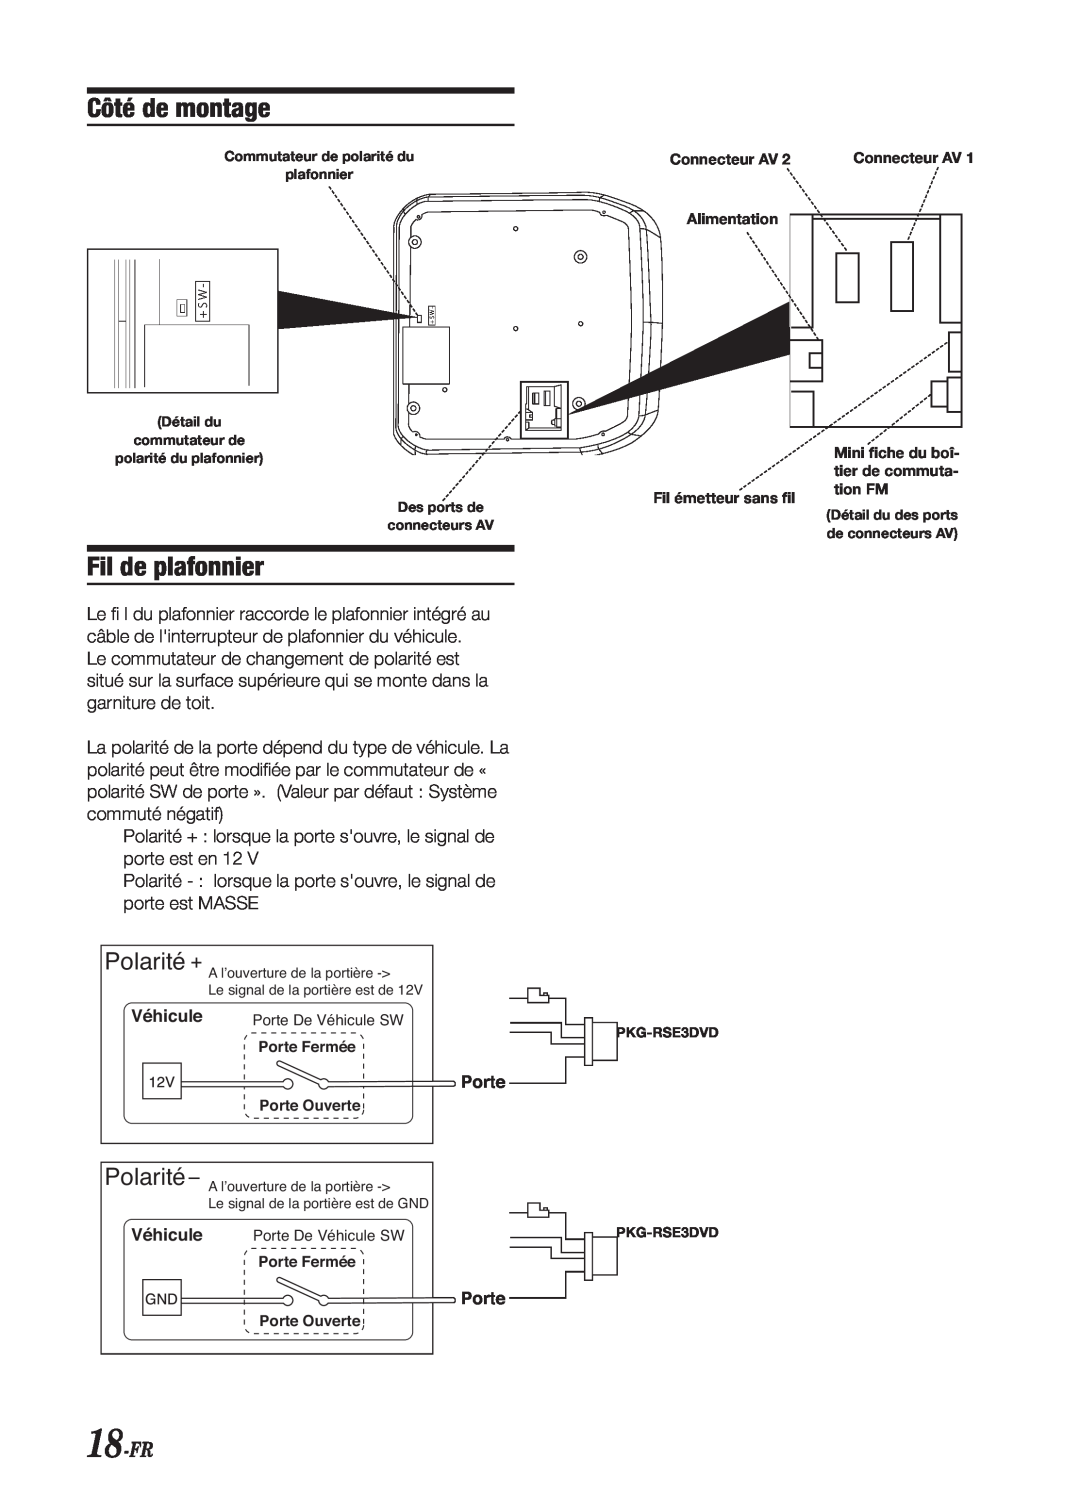 Alpine PKG-RSE3DVD installation manual Côté de montage, Fil de plafonnier, Polarité, 18-FR 